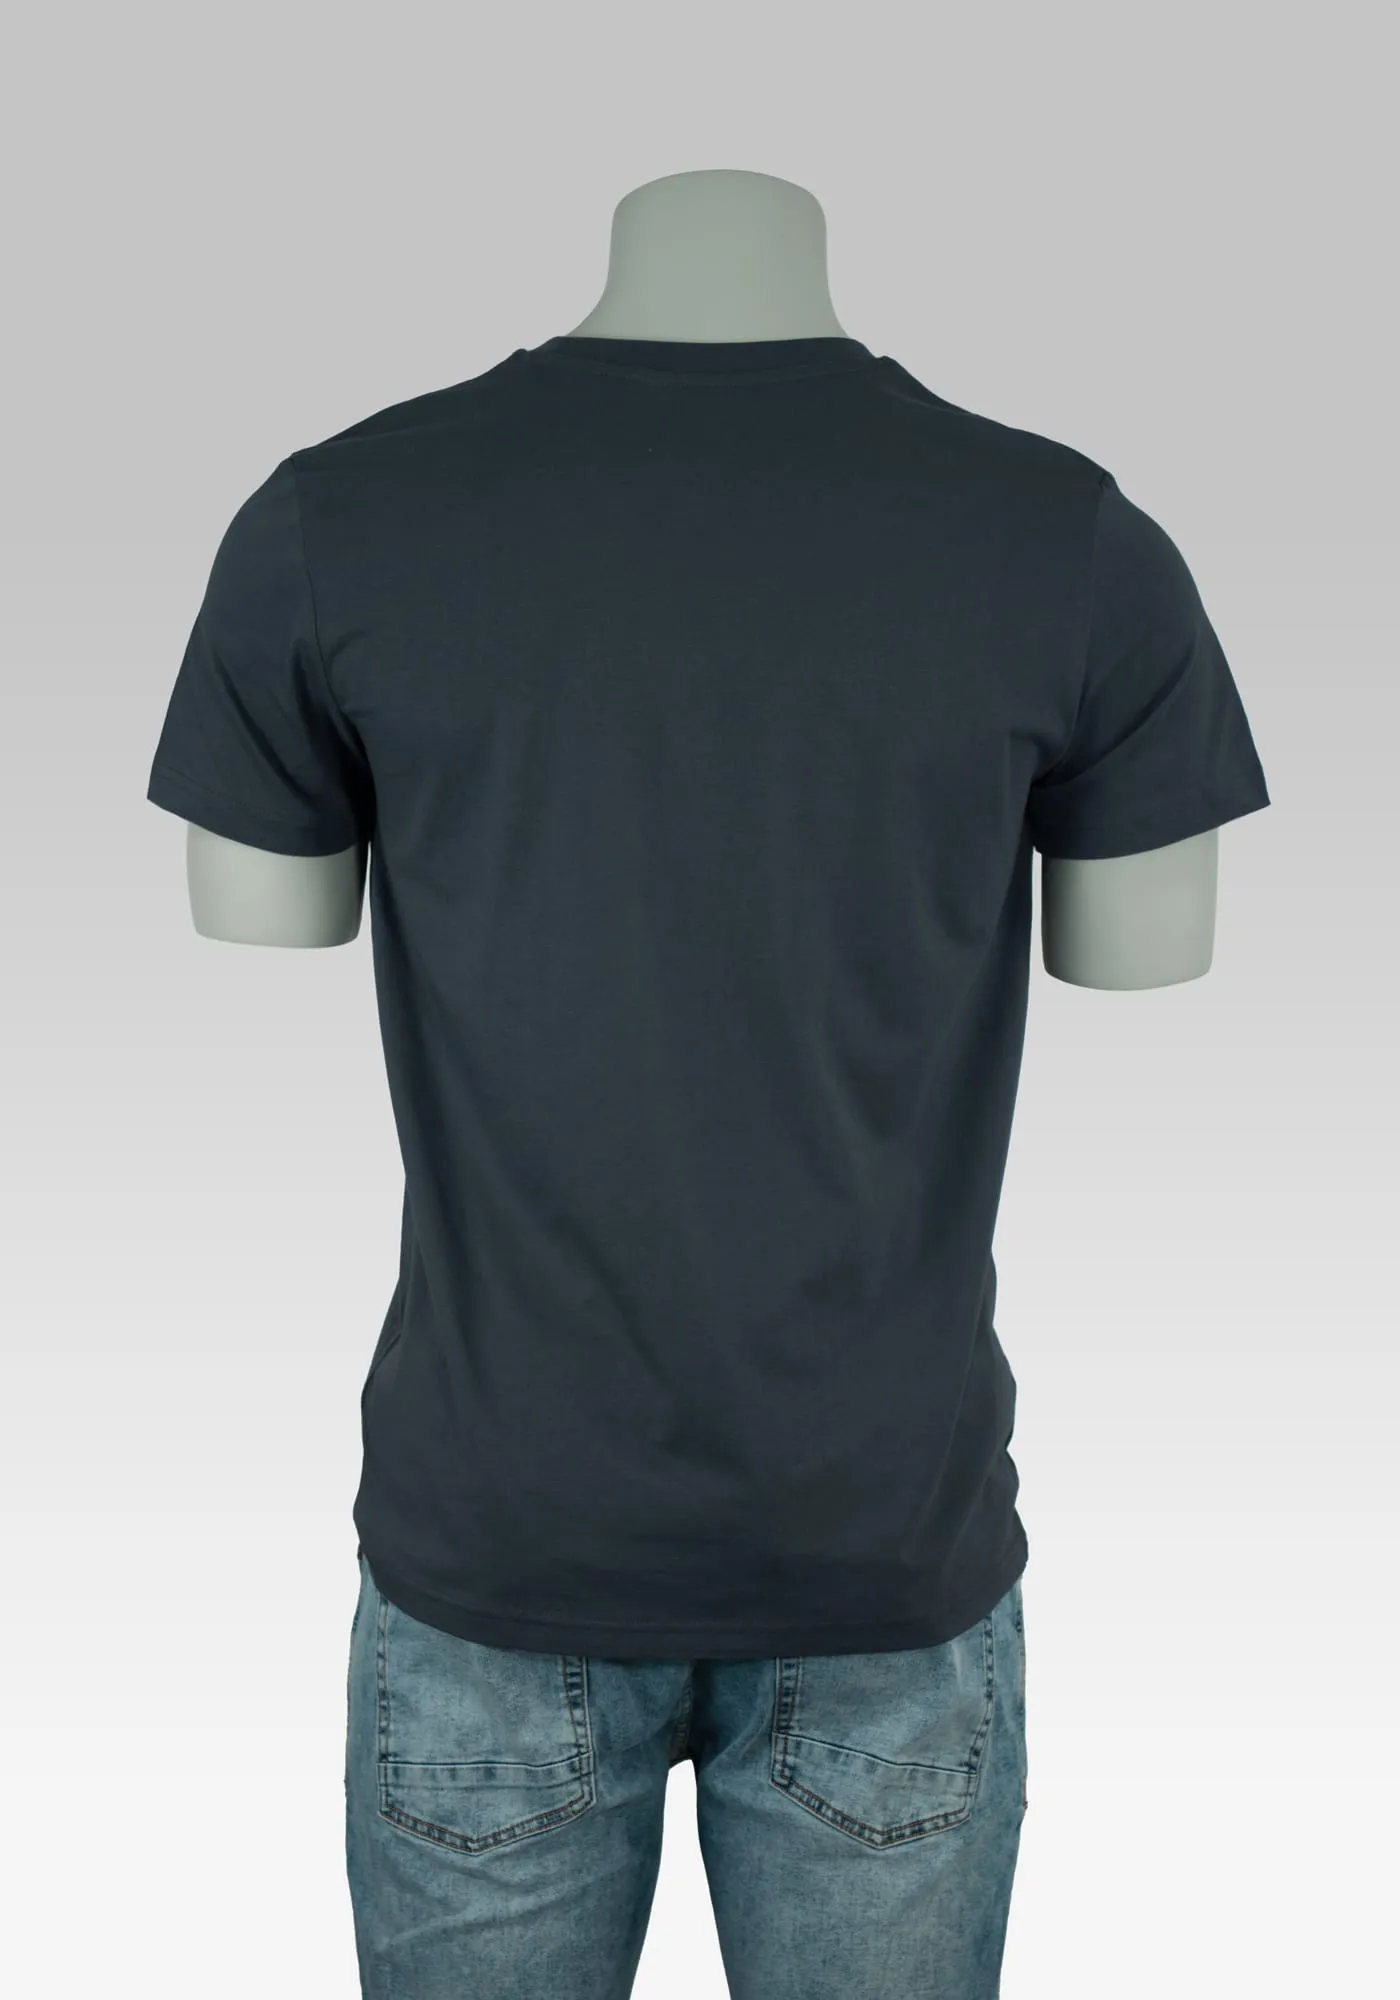 Brand T-Shirt auf Hollowpuppe von hinten ohne Rückenprint